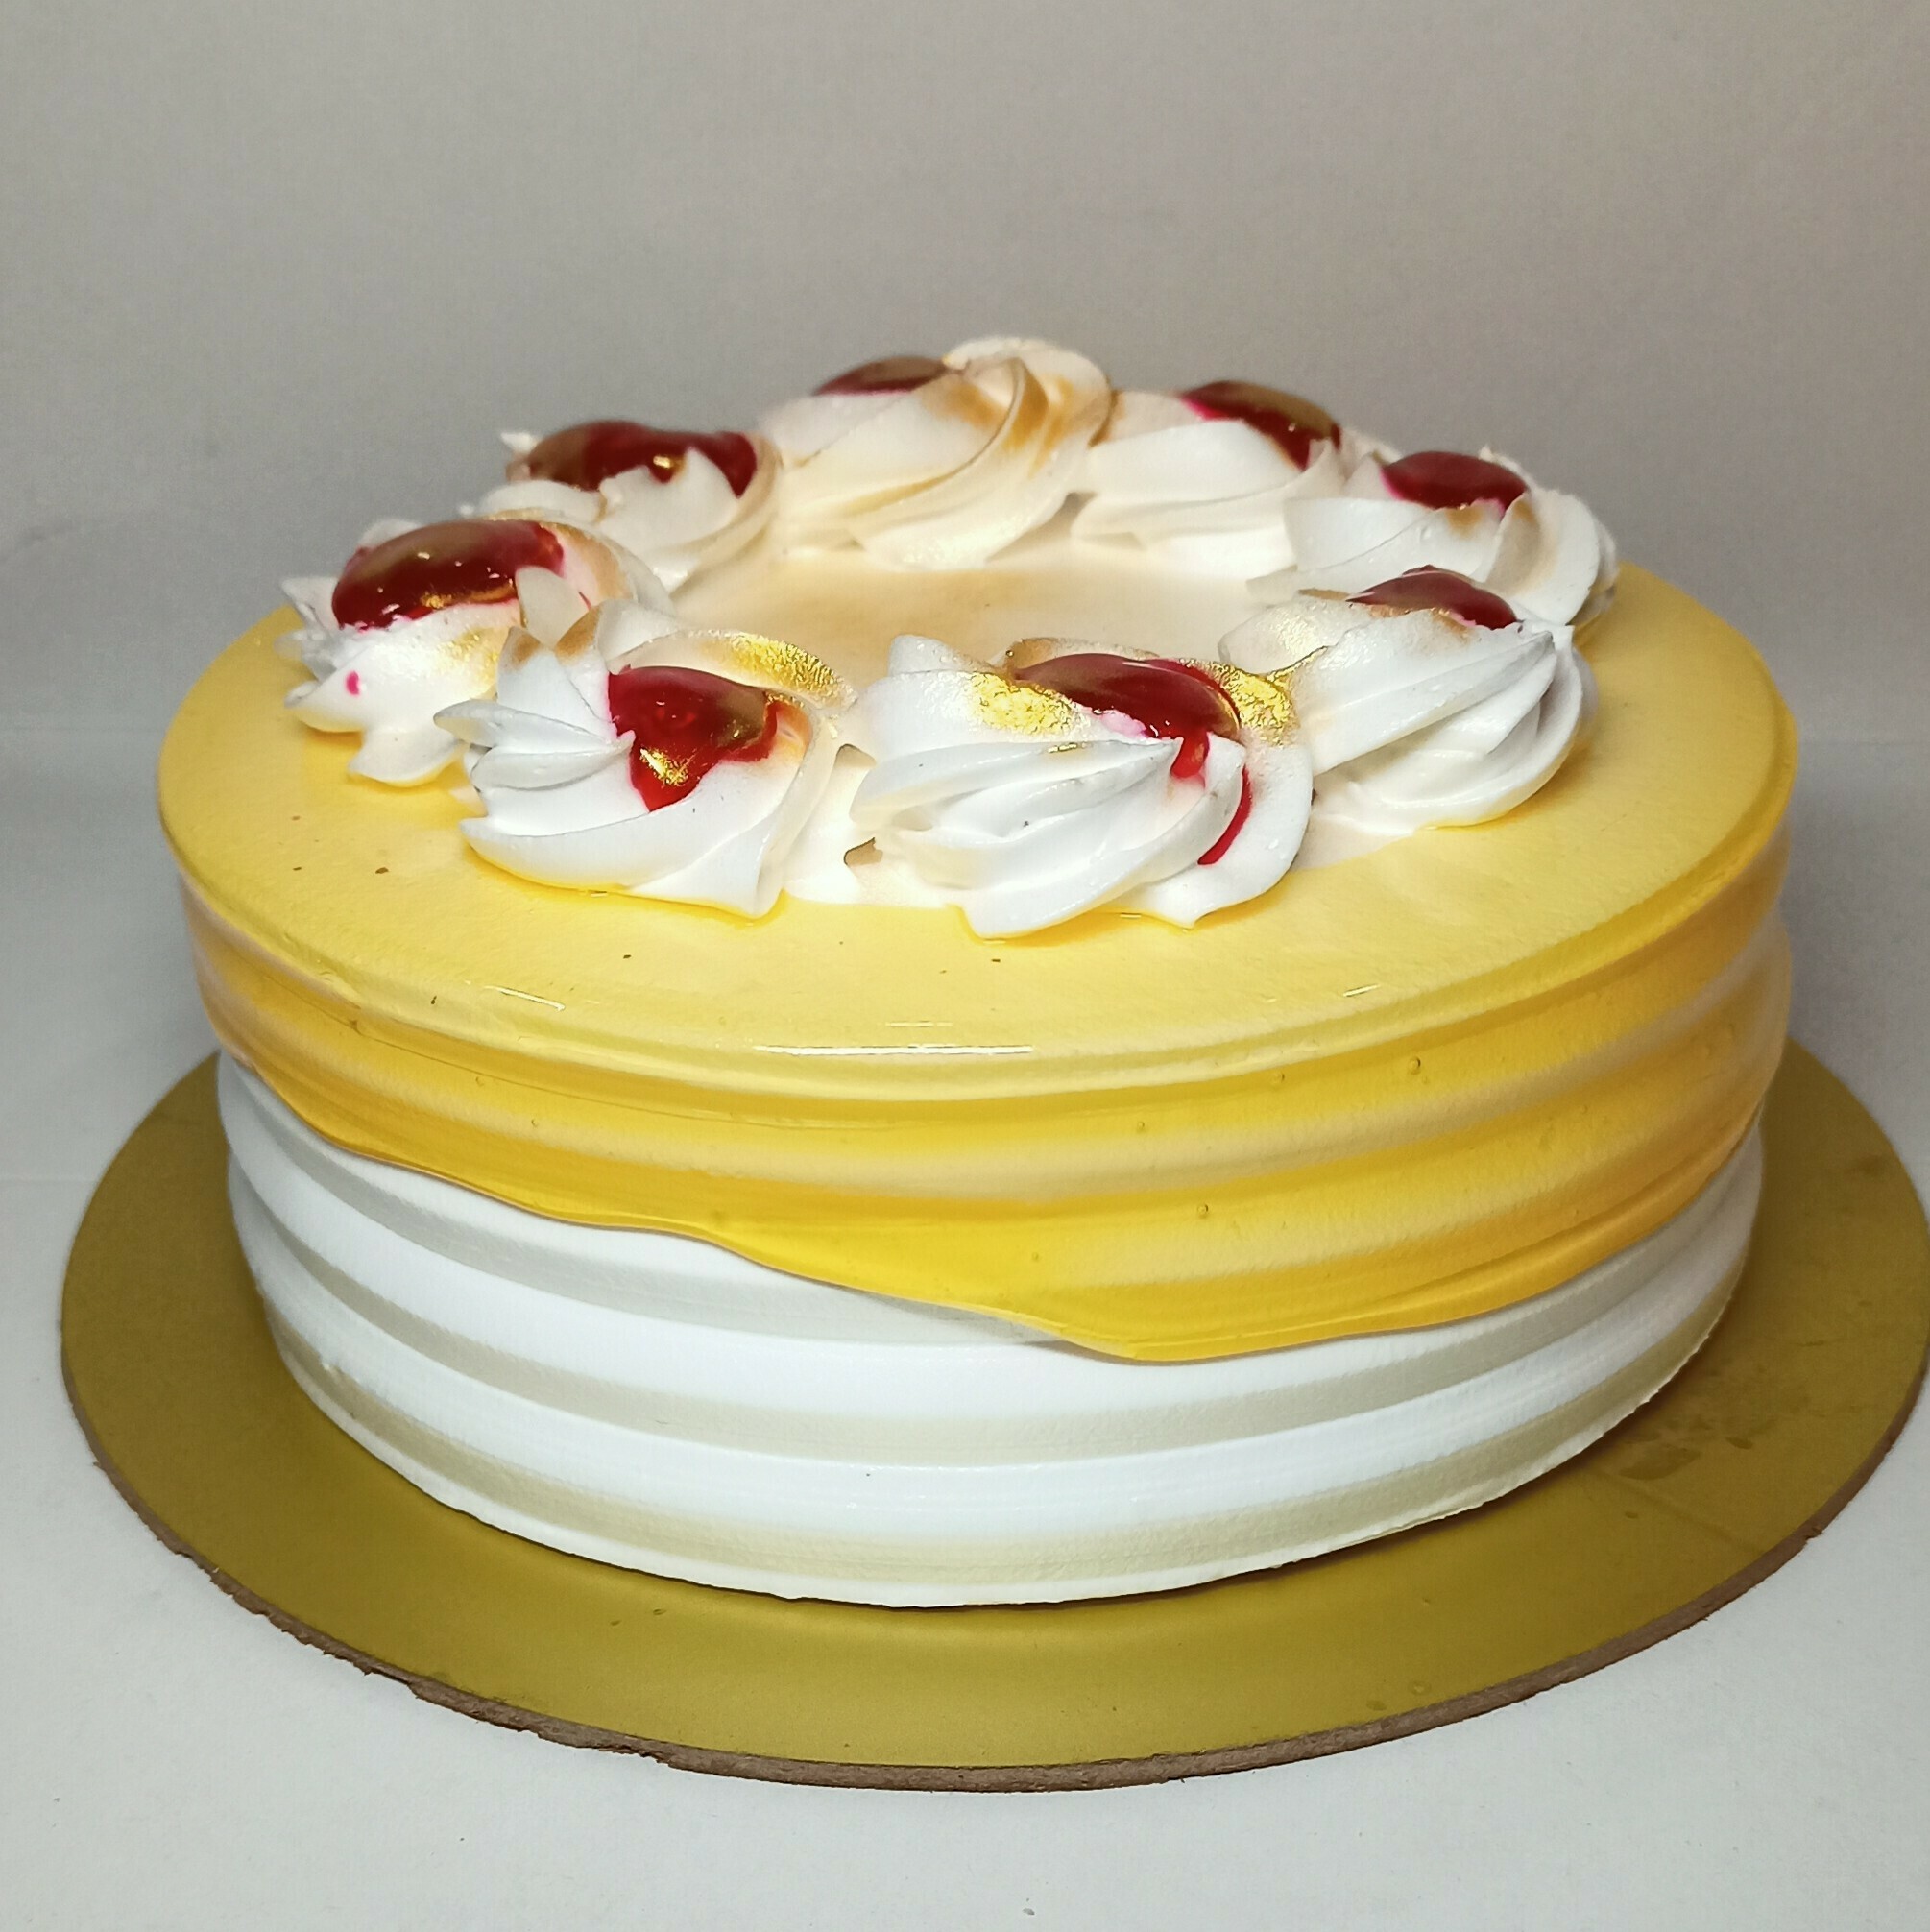 Healthy Company Anniversary Cake Ideas | White Spatula